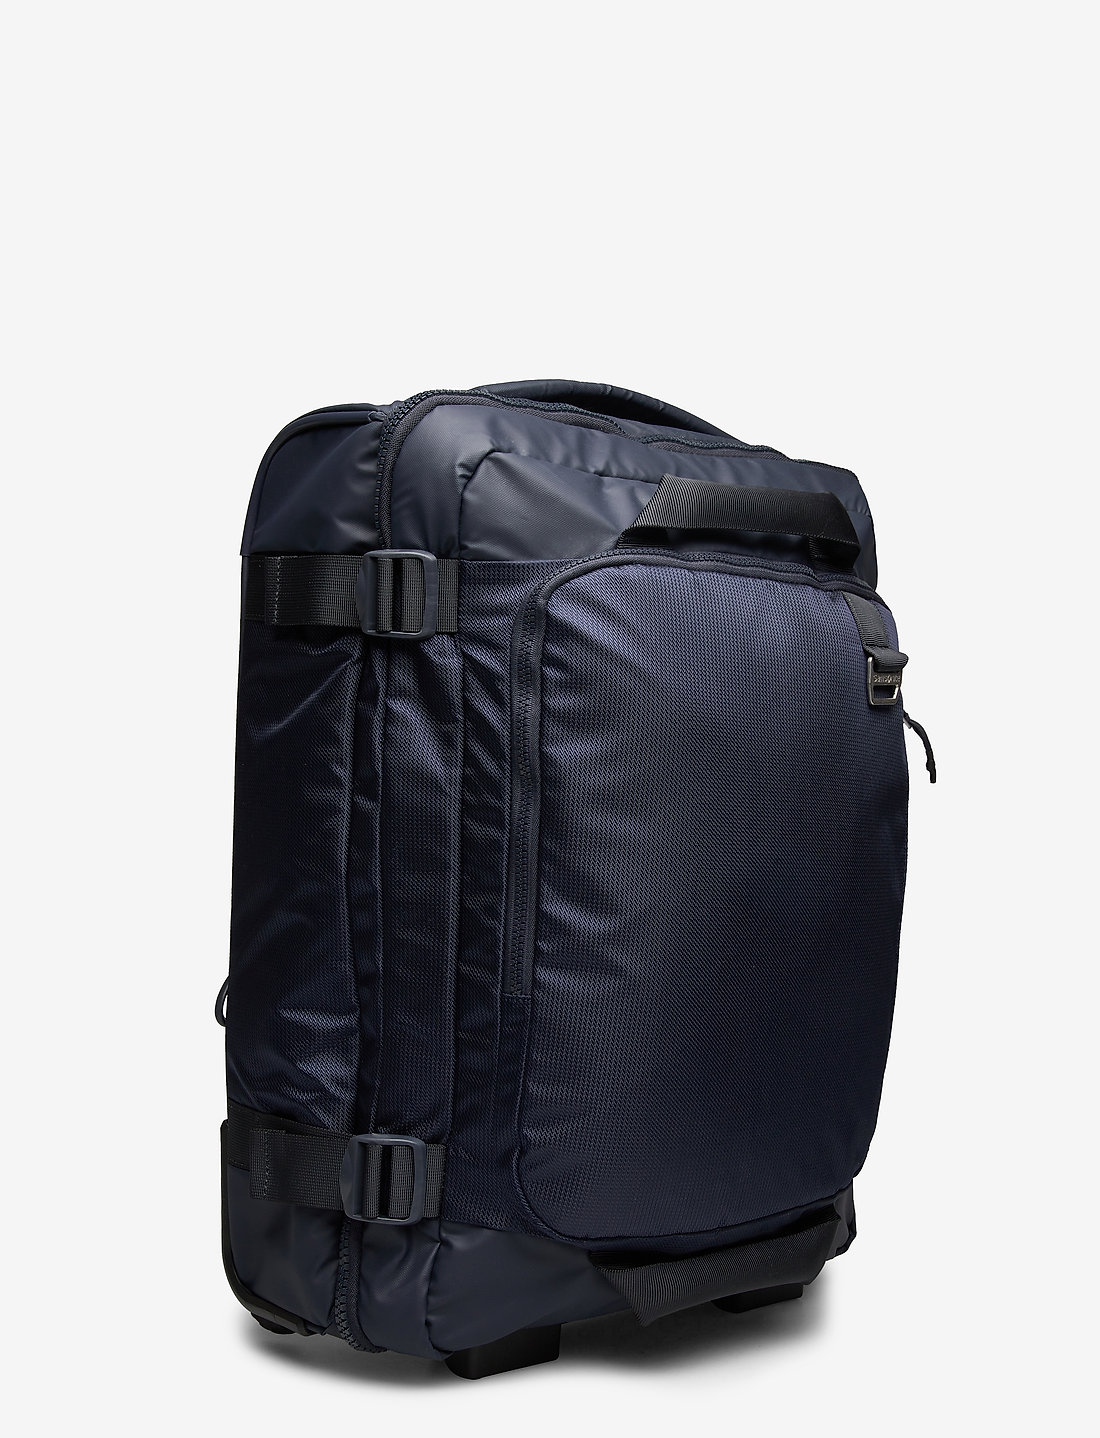 Samsonite Midtown Backpack/wl 55 - Reisetrolley Koffer